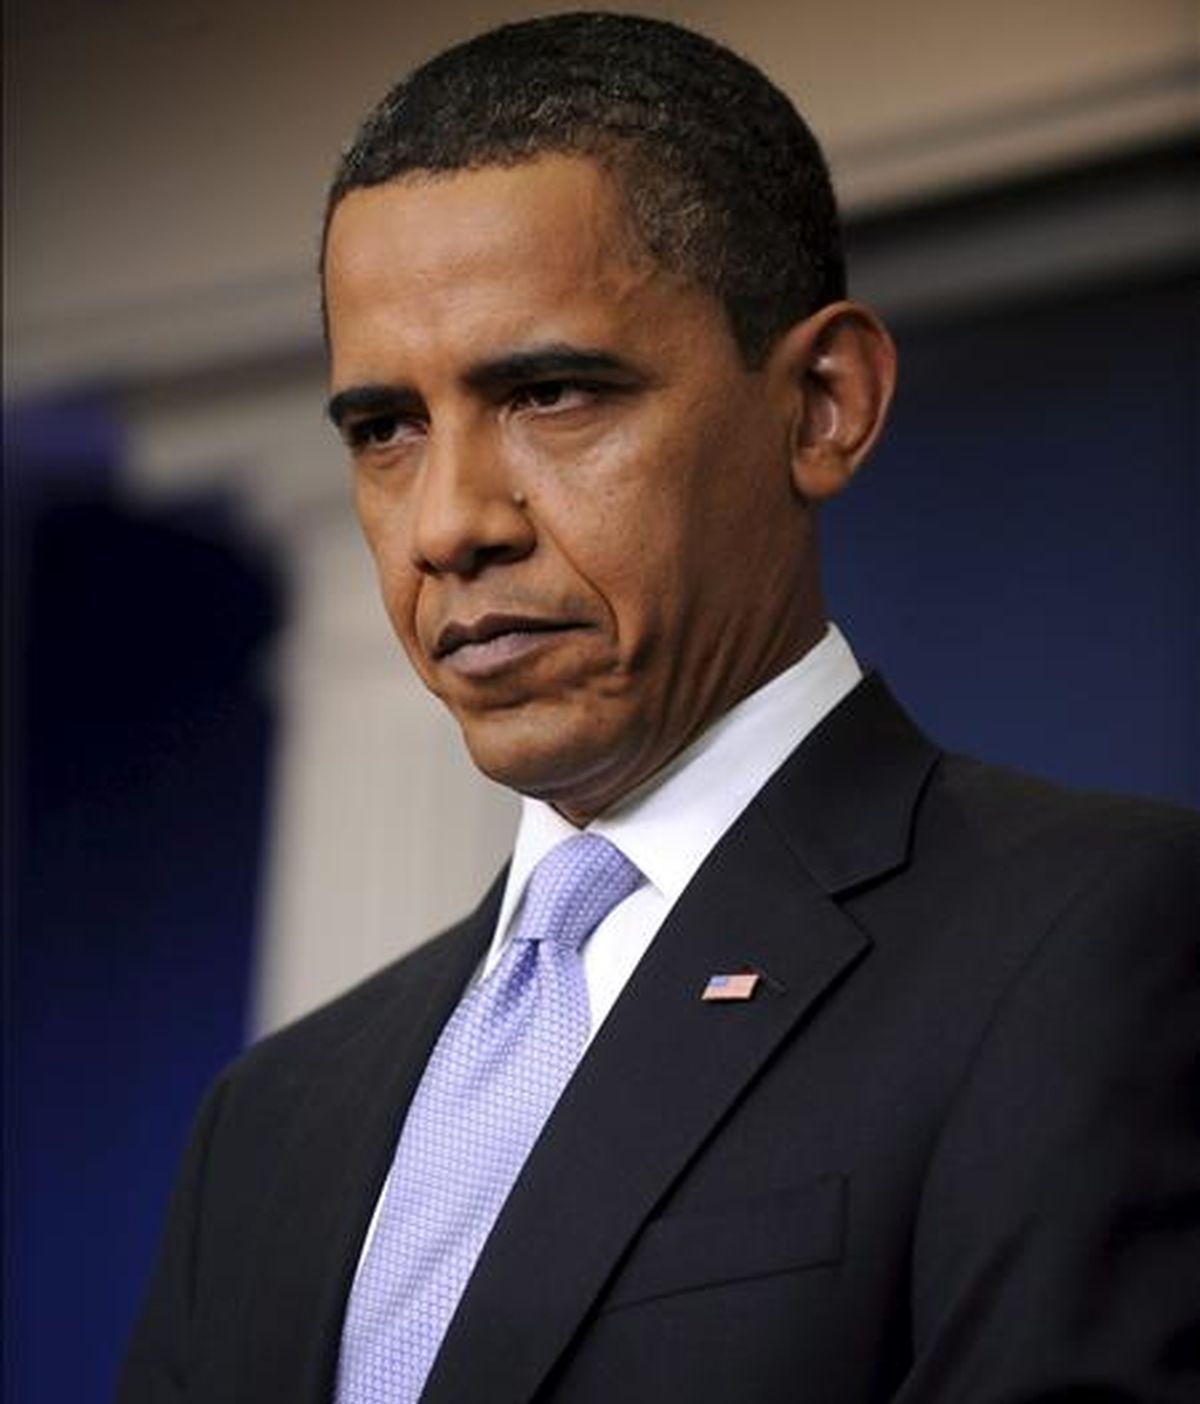 El presidente de Estados Unidos, Barack Obama, se declaró "escandalizado" por la represión contra los manifestantes en Irán y expresó su "fuerte condena a estas acciones injustas". EFE